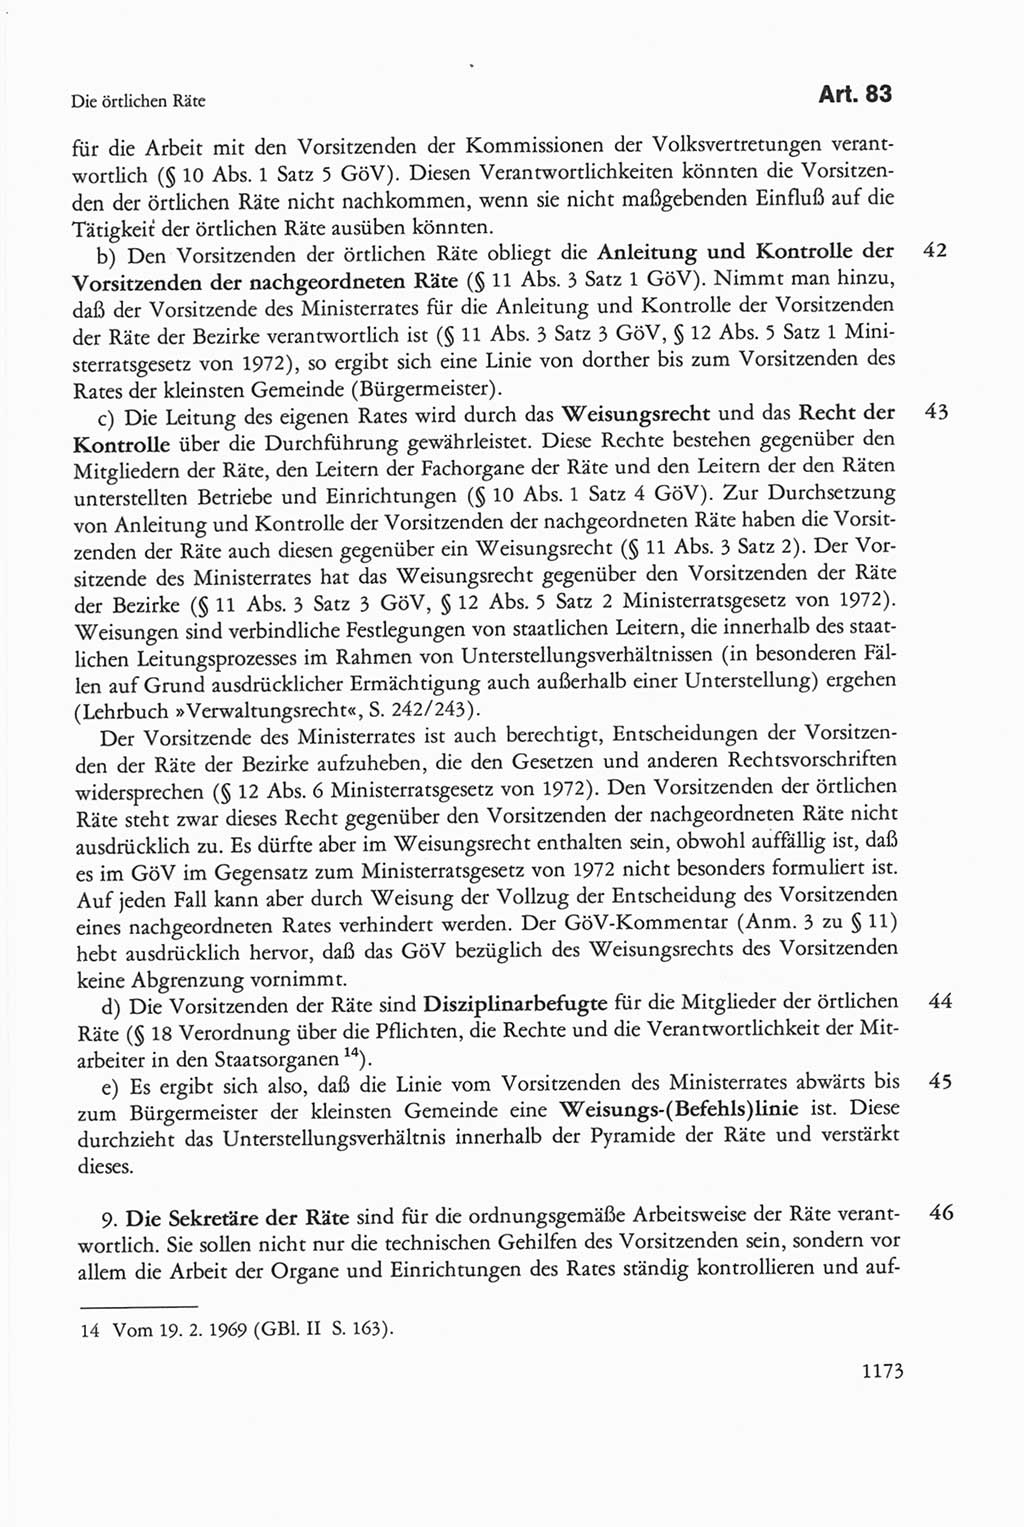 Die sozialistische Verfassung der Deutschen Demokratischen Republik (DDR), Kommentar mit einem Nachtrag 1997, Seite 1173 (Soz. Verf. DDR Komm. Nachtr. 1997, S. 1173)